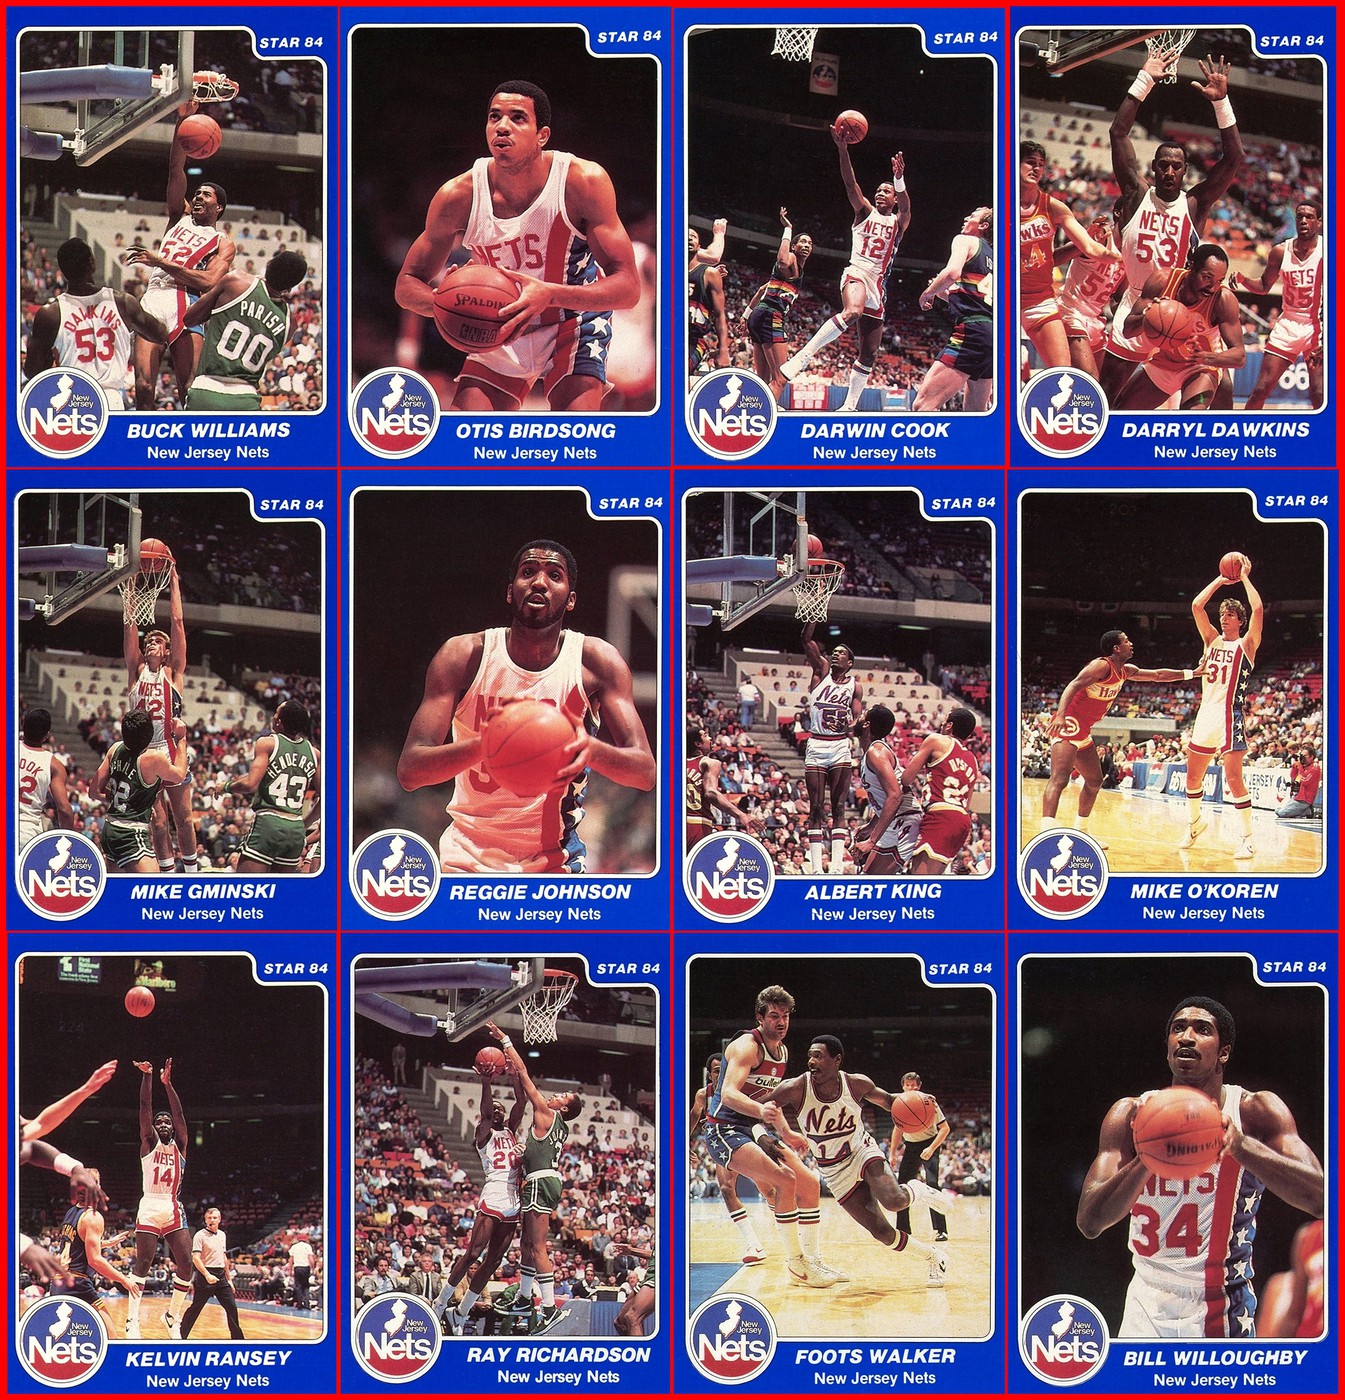 1983-84 Nets